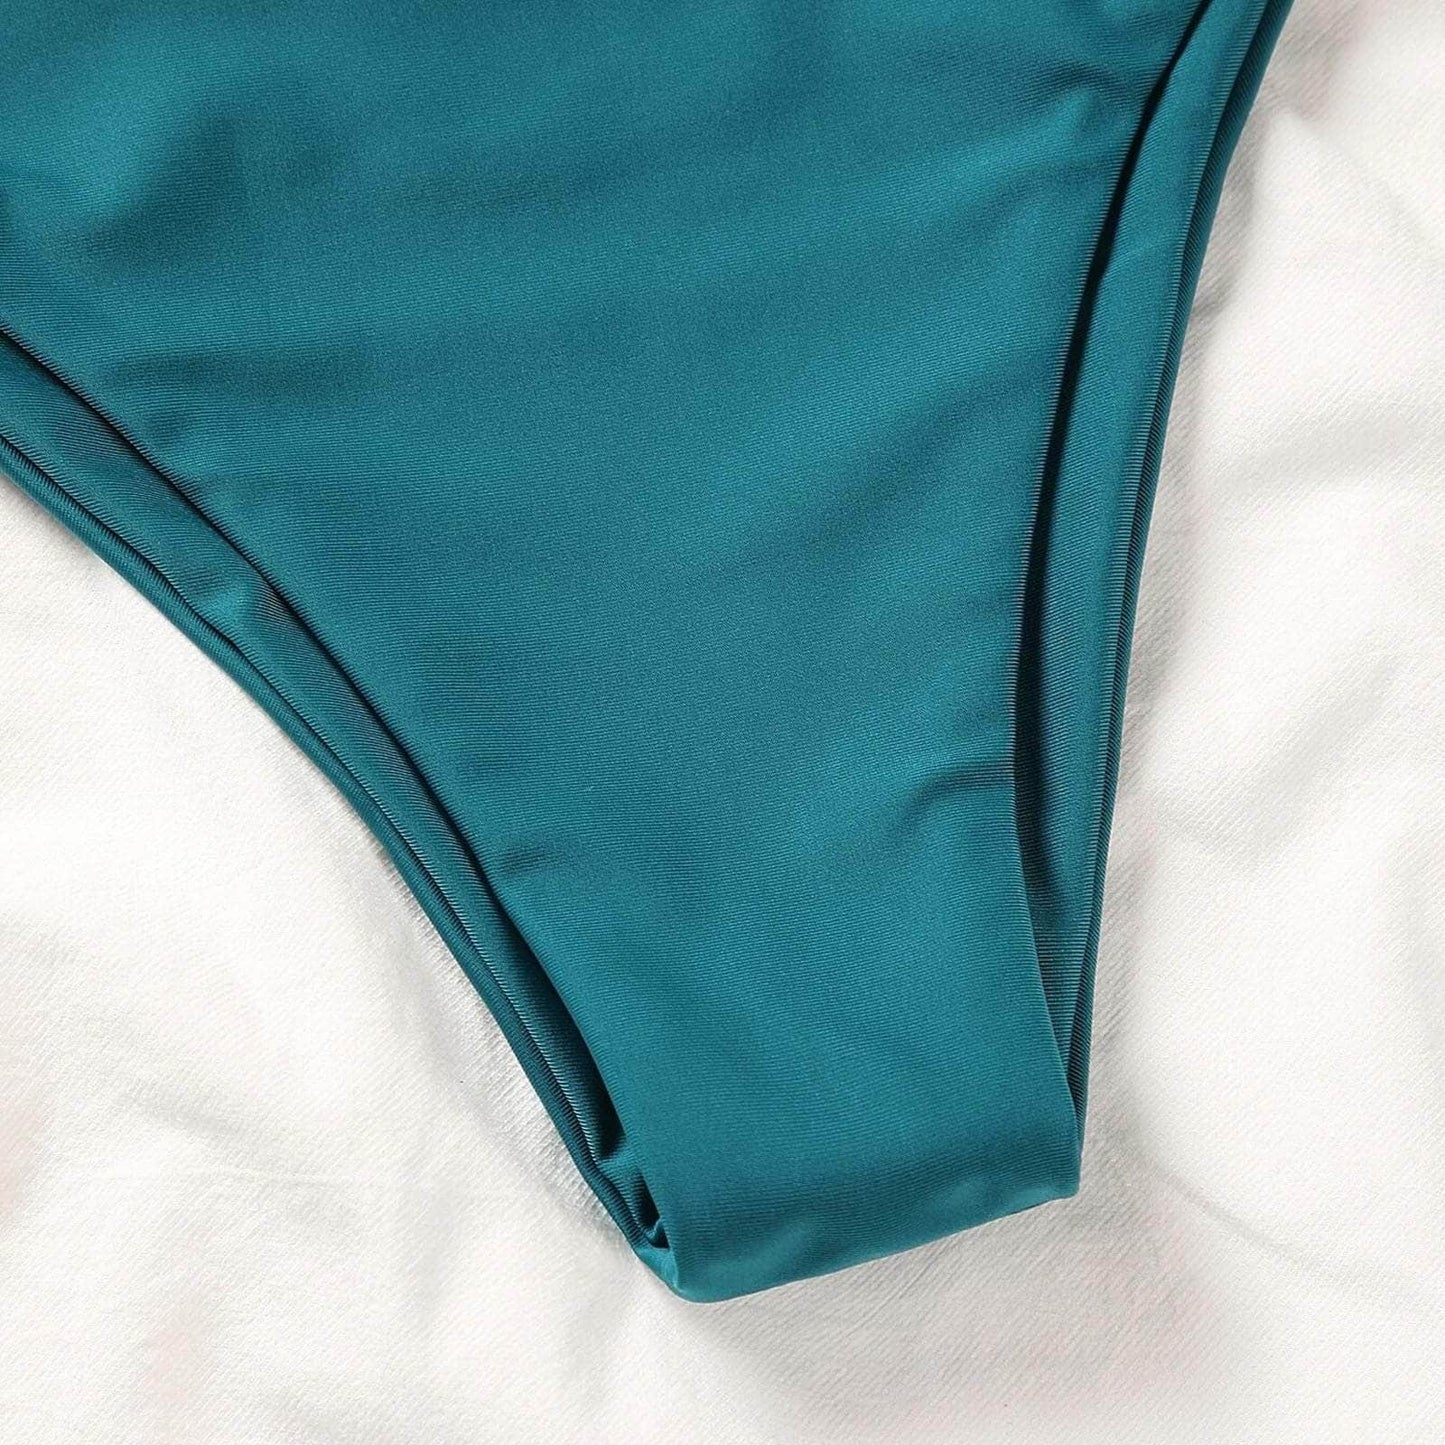 2021 Women Swimsuit Ladies Sexy Fashion Color Matching Tie-dye Bandeau Bandage Bikini Set Push-Up Swimwear.